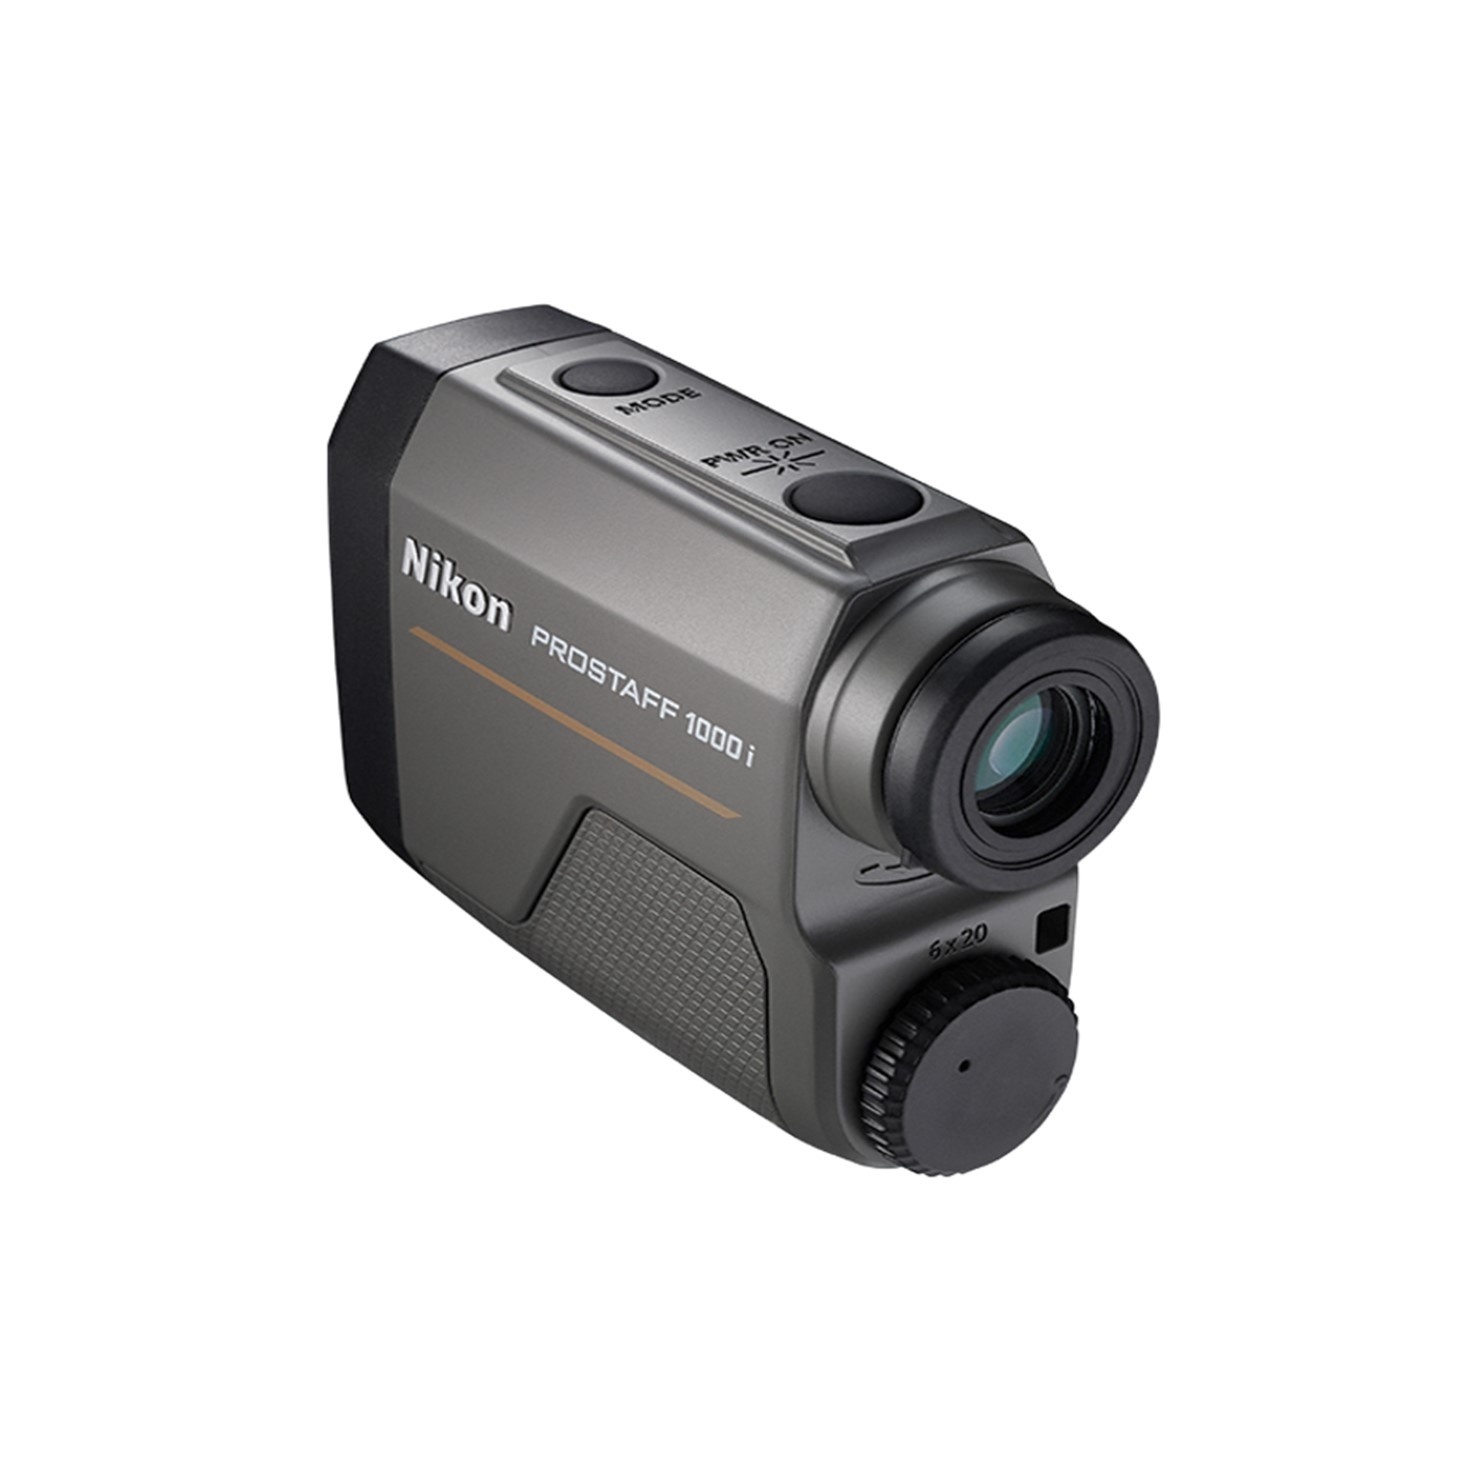 Nikon Rangefinder Prostaff Laser 1000i